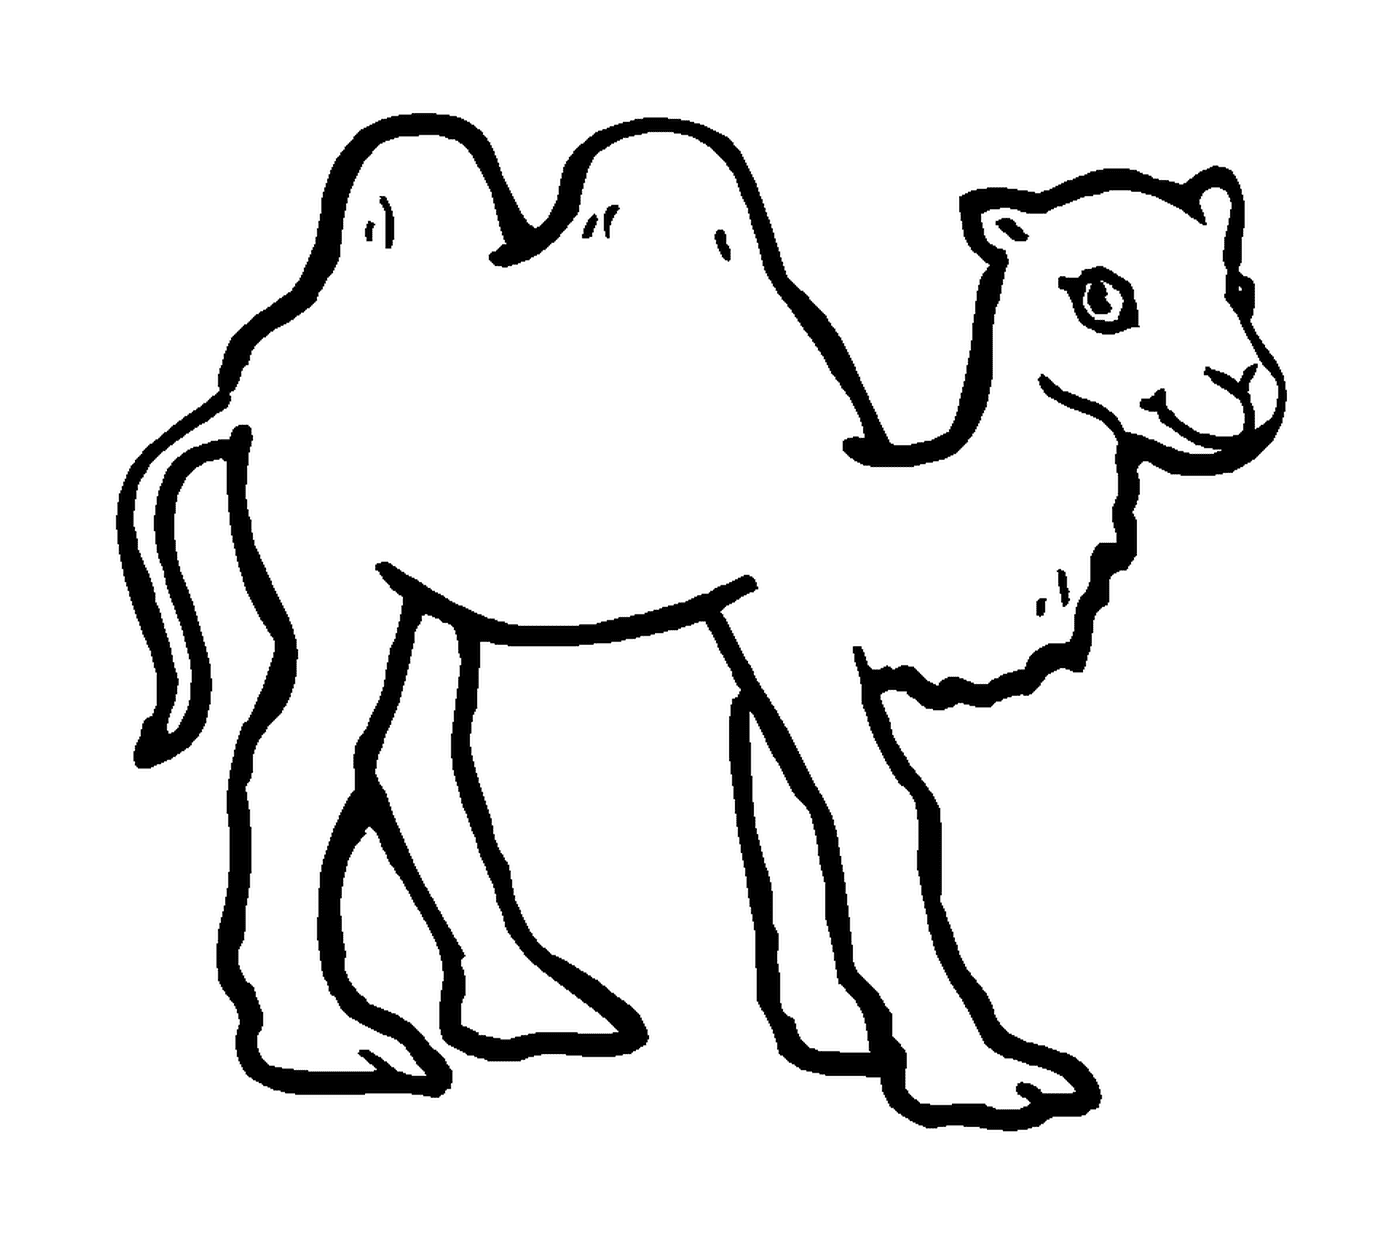  Un camello dibujado en negro 